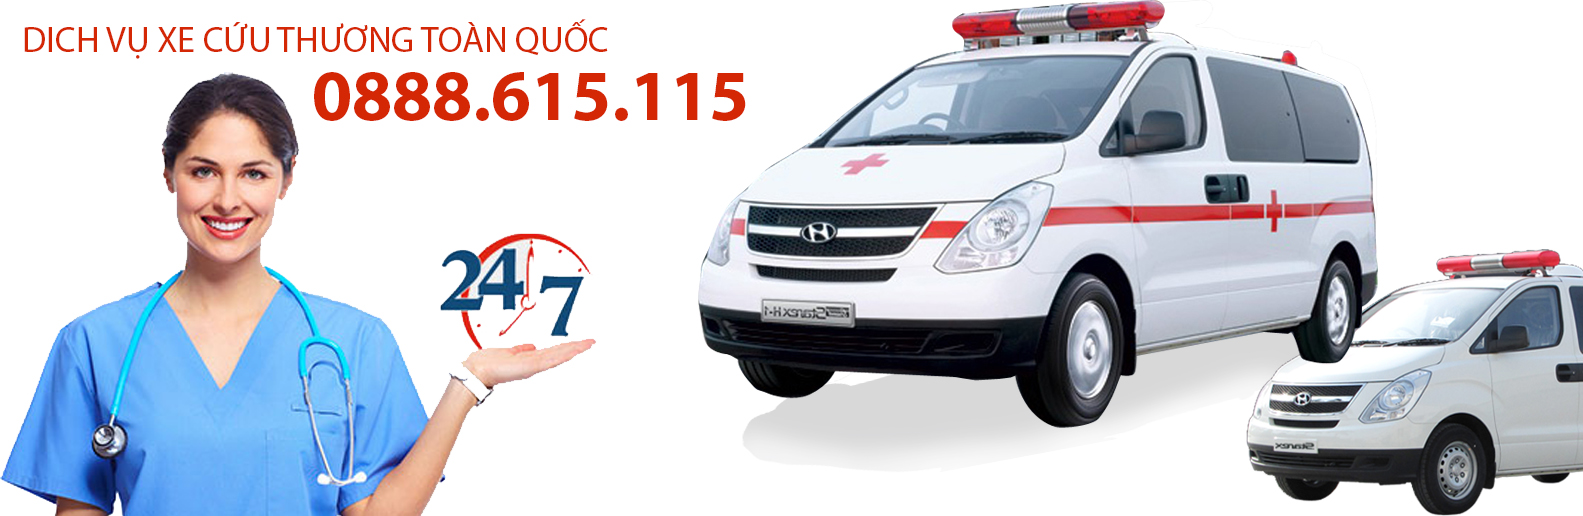 Gọi xe cấp cứu Hà Nội chuyên nghiệp và nhanh chóng – Dịch vụ 24/7 – Đặt lịch ngay